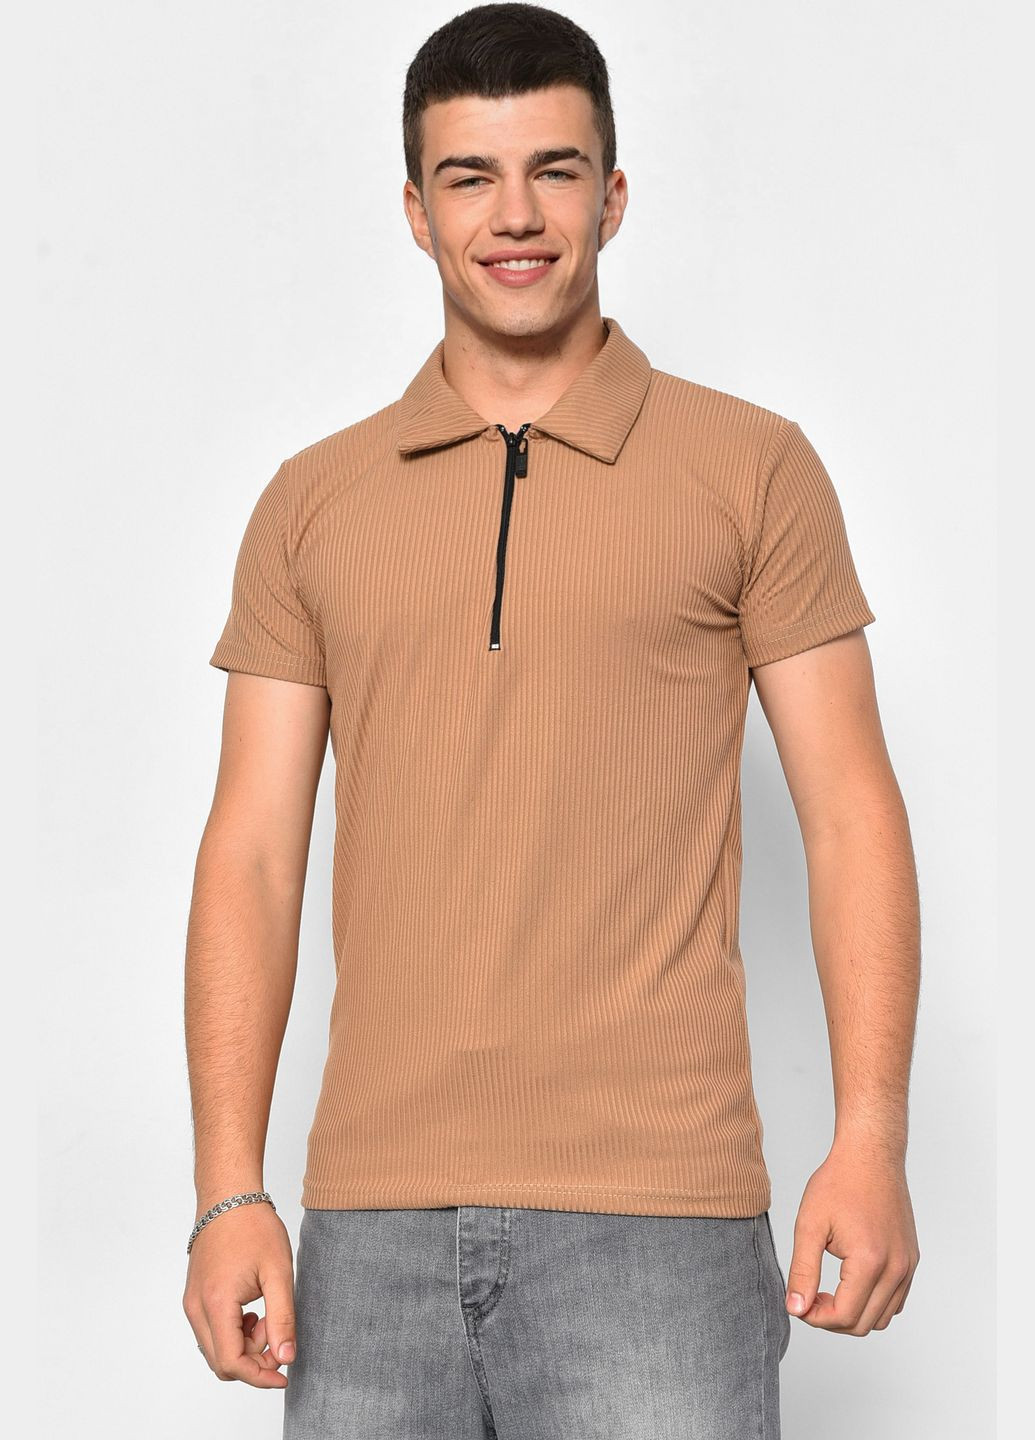 Коричневая футболка мужская поло цвета мокко Let's Shop